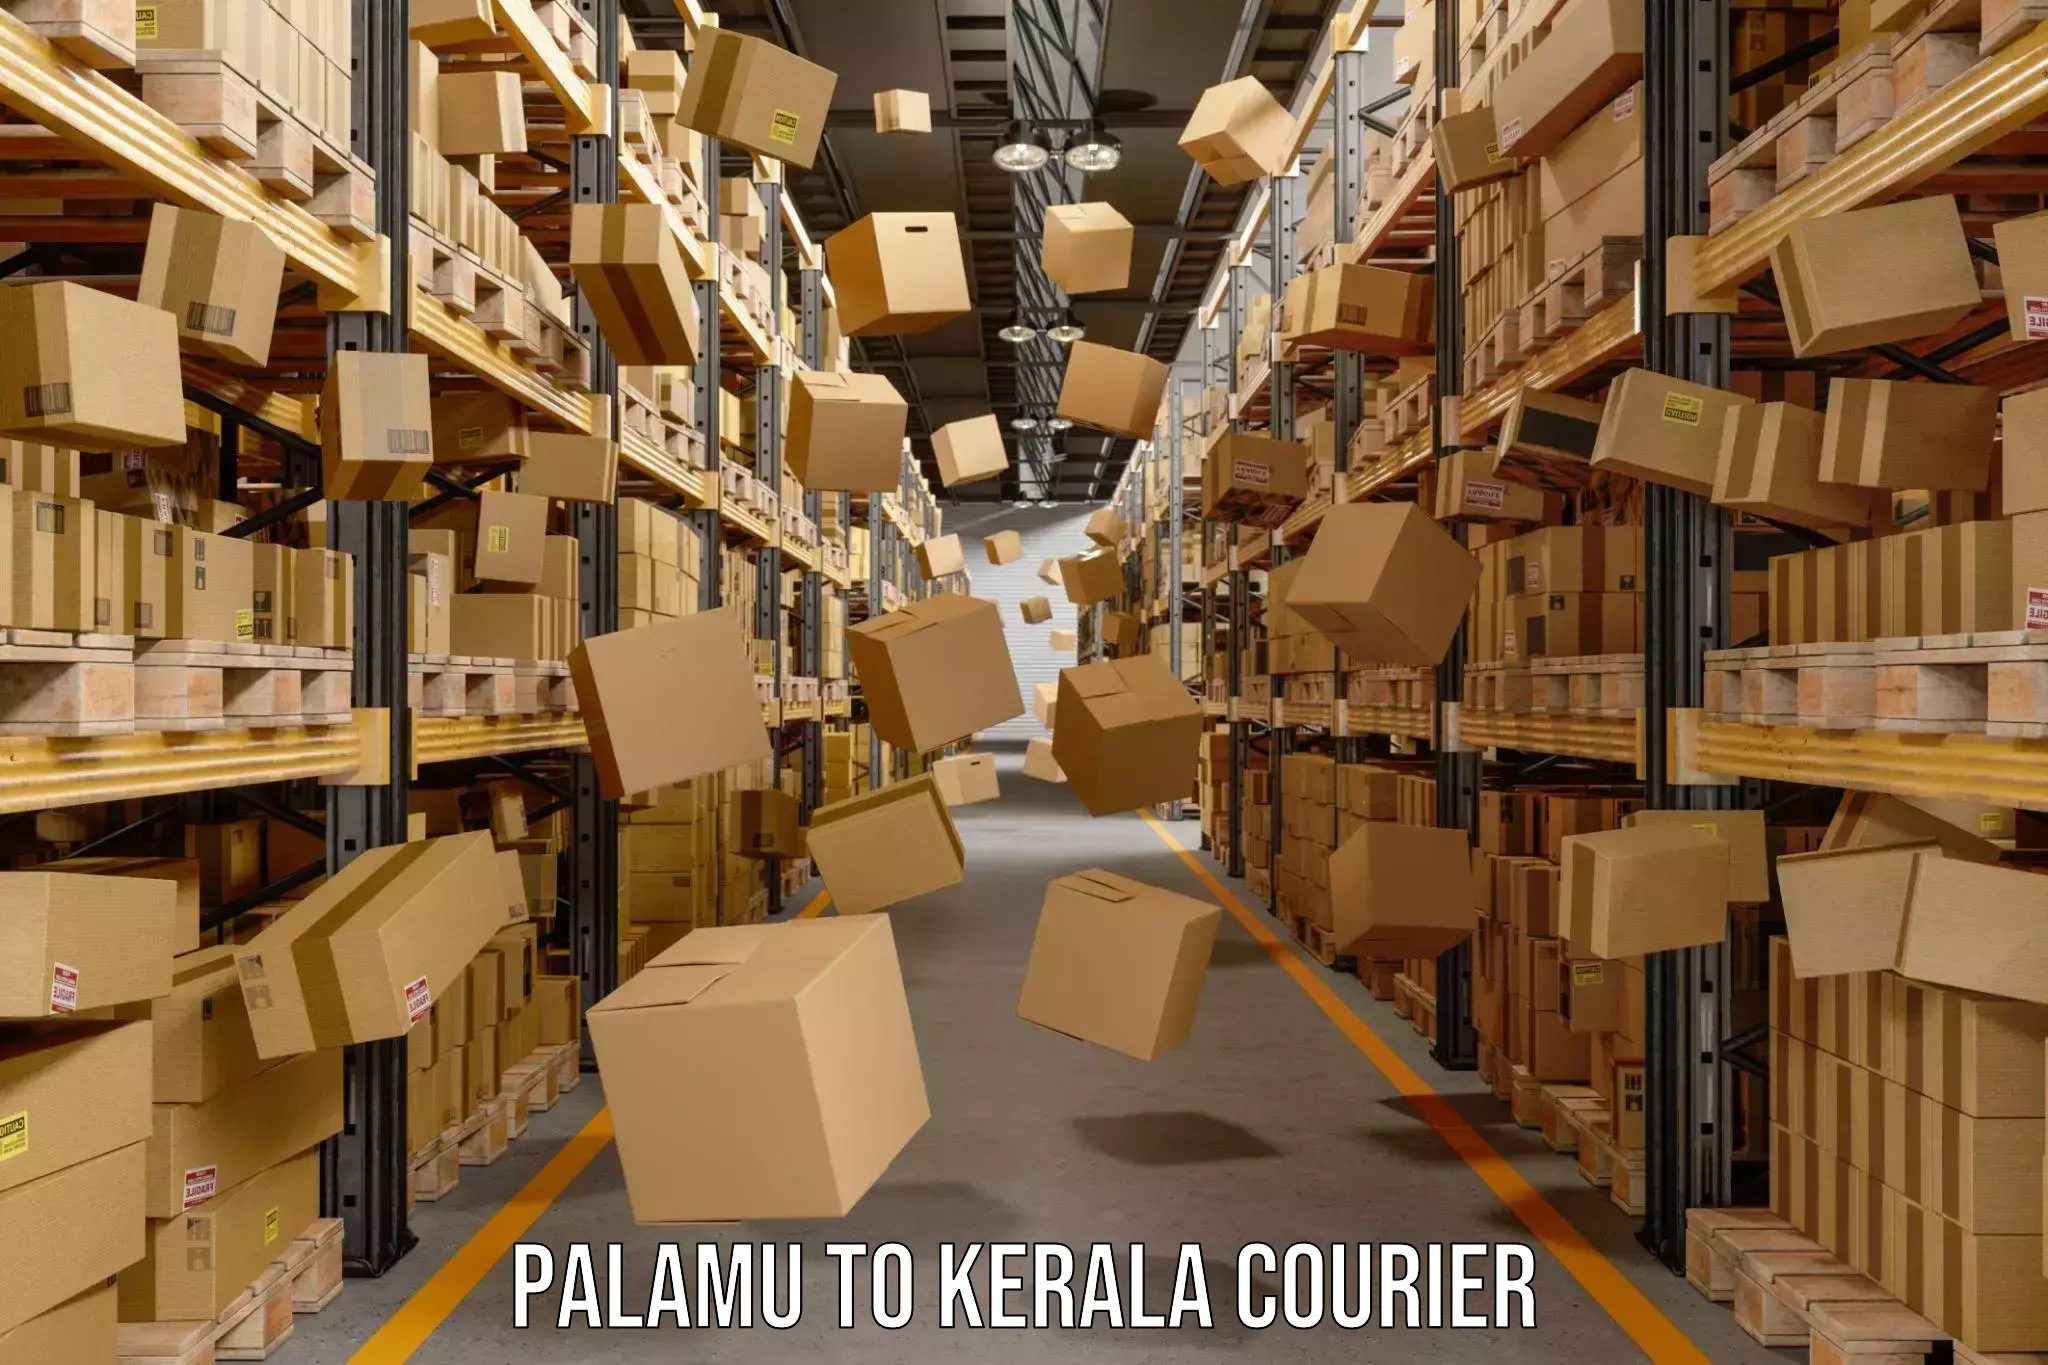 International courier networks Palamu to Kakkayam